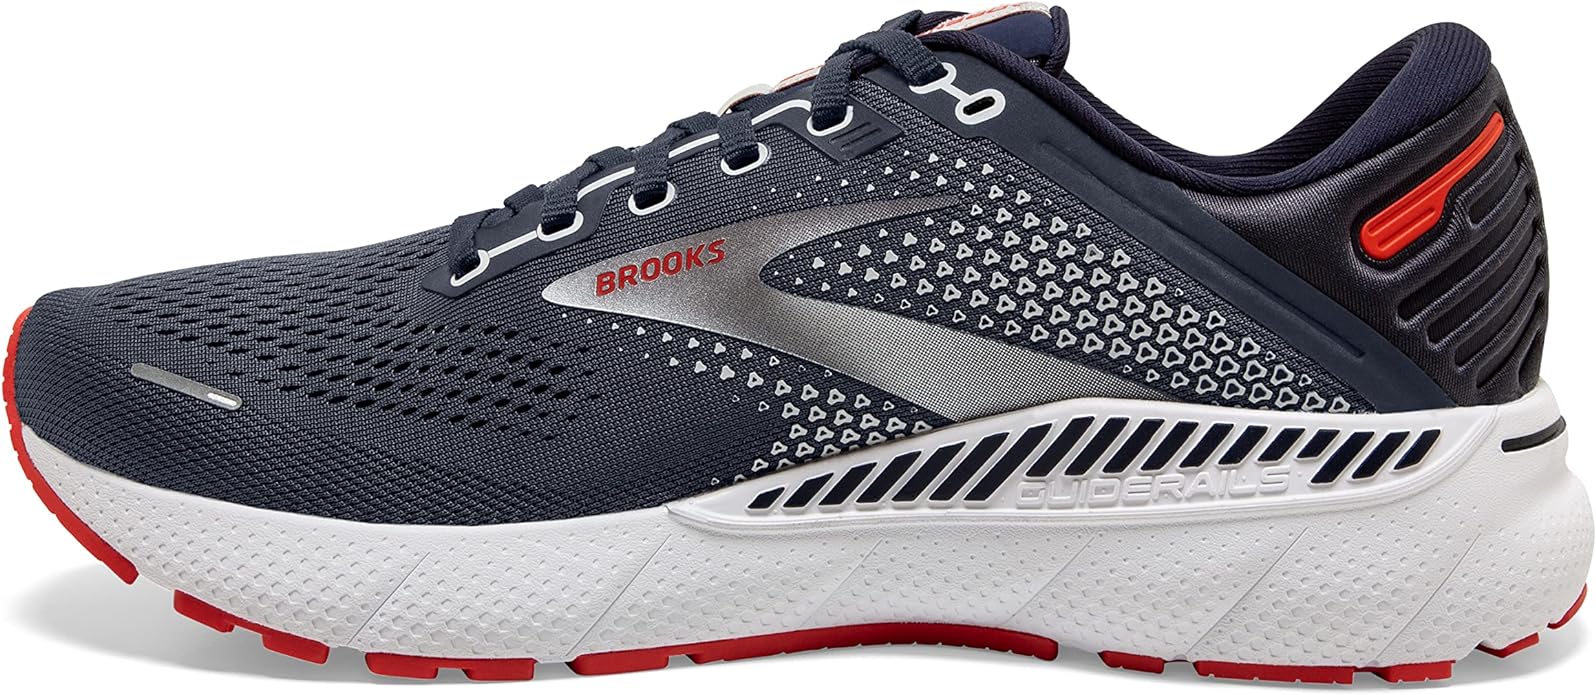 brooks-running-shoes-brands - En blogg om maratonträning och löpning